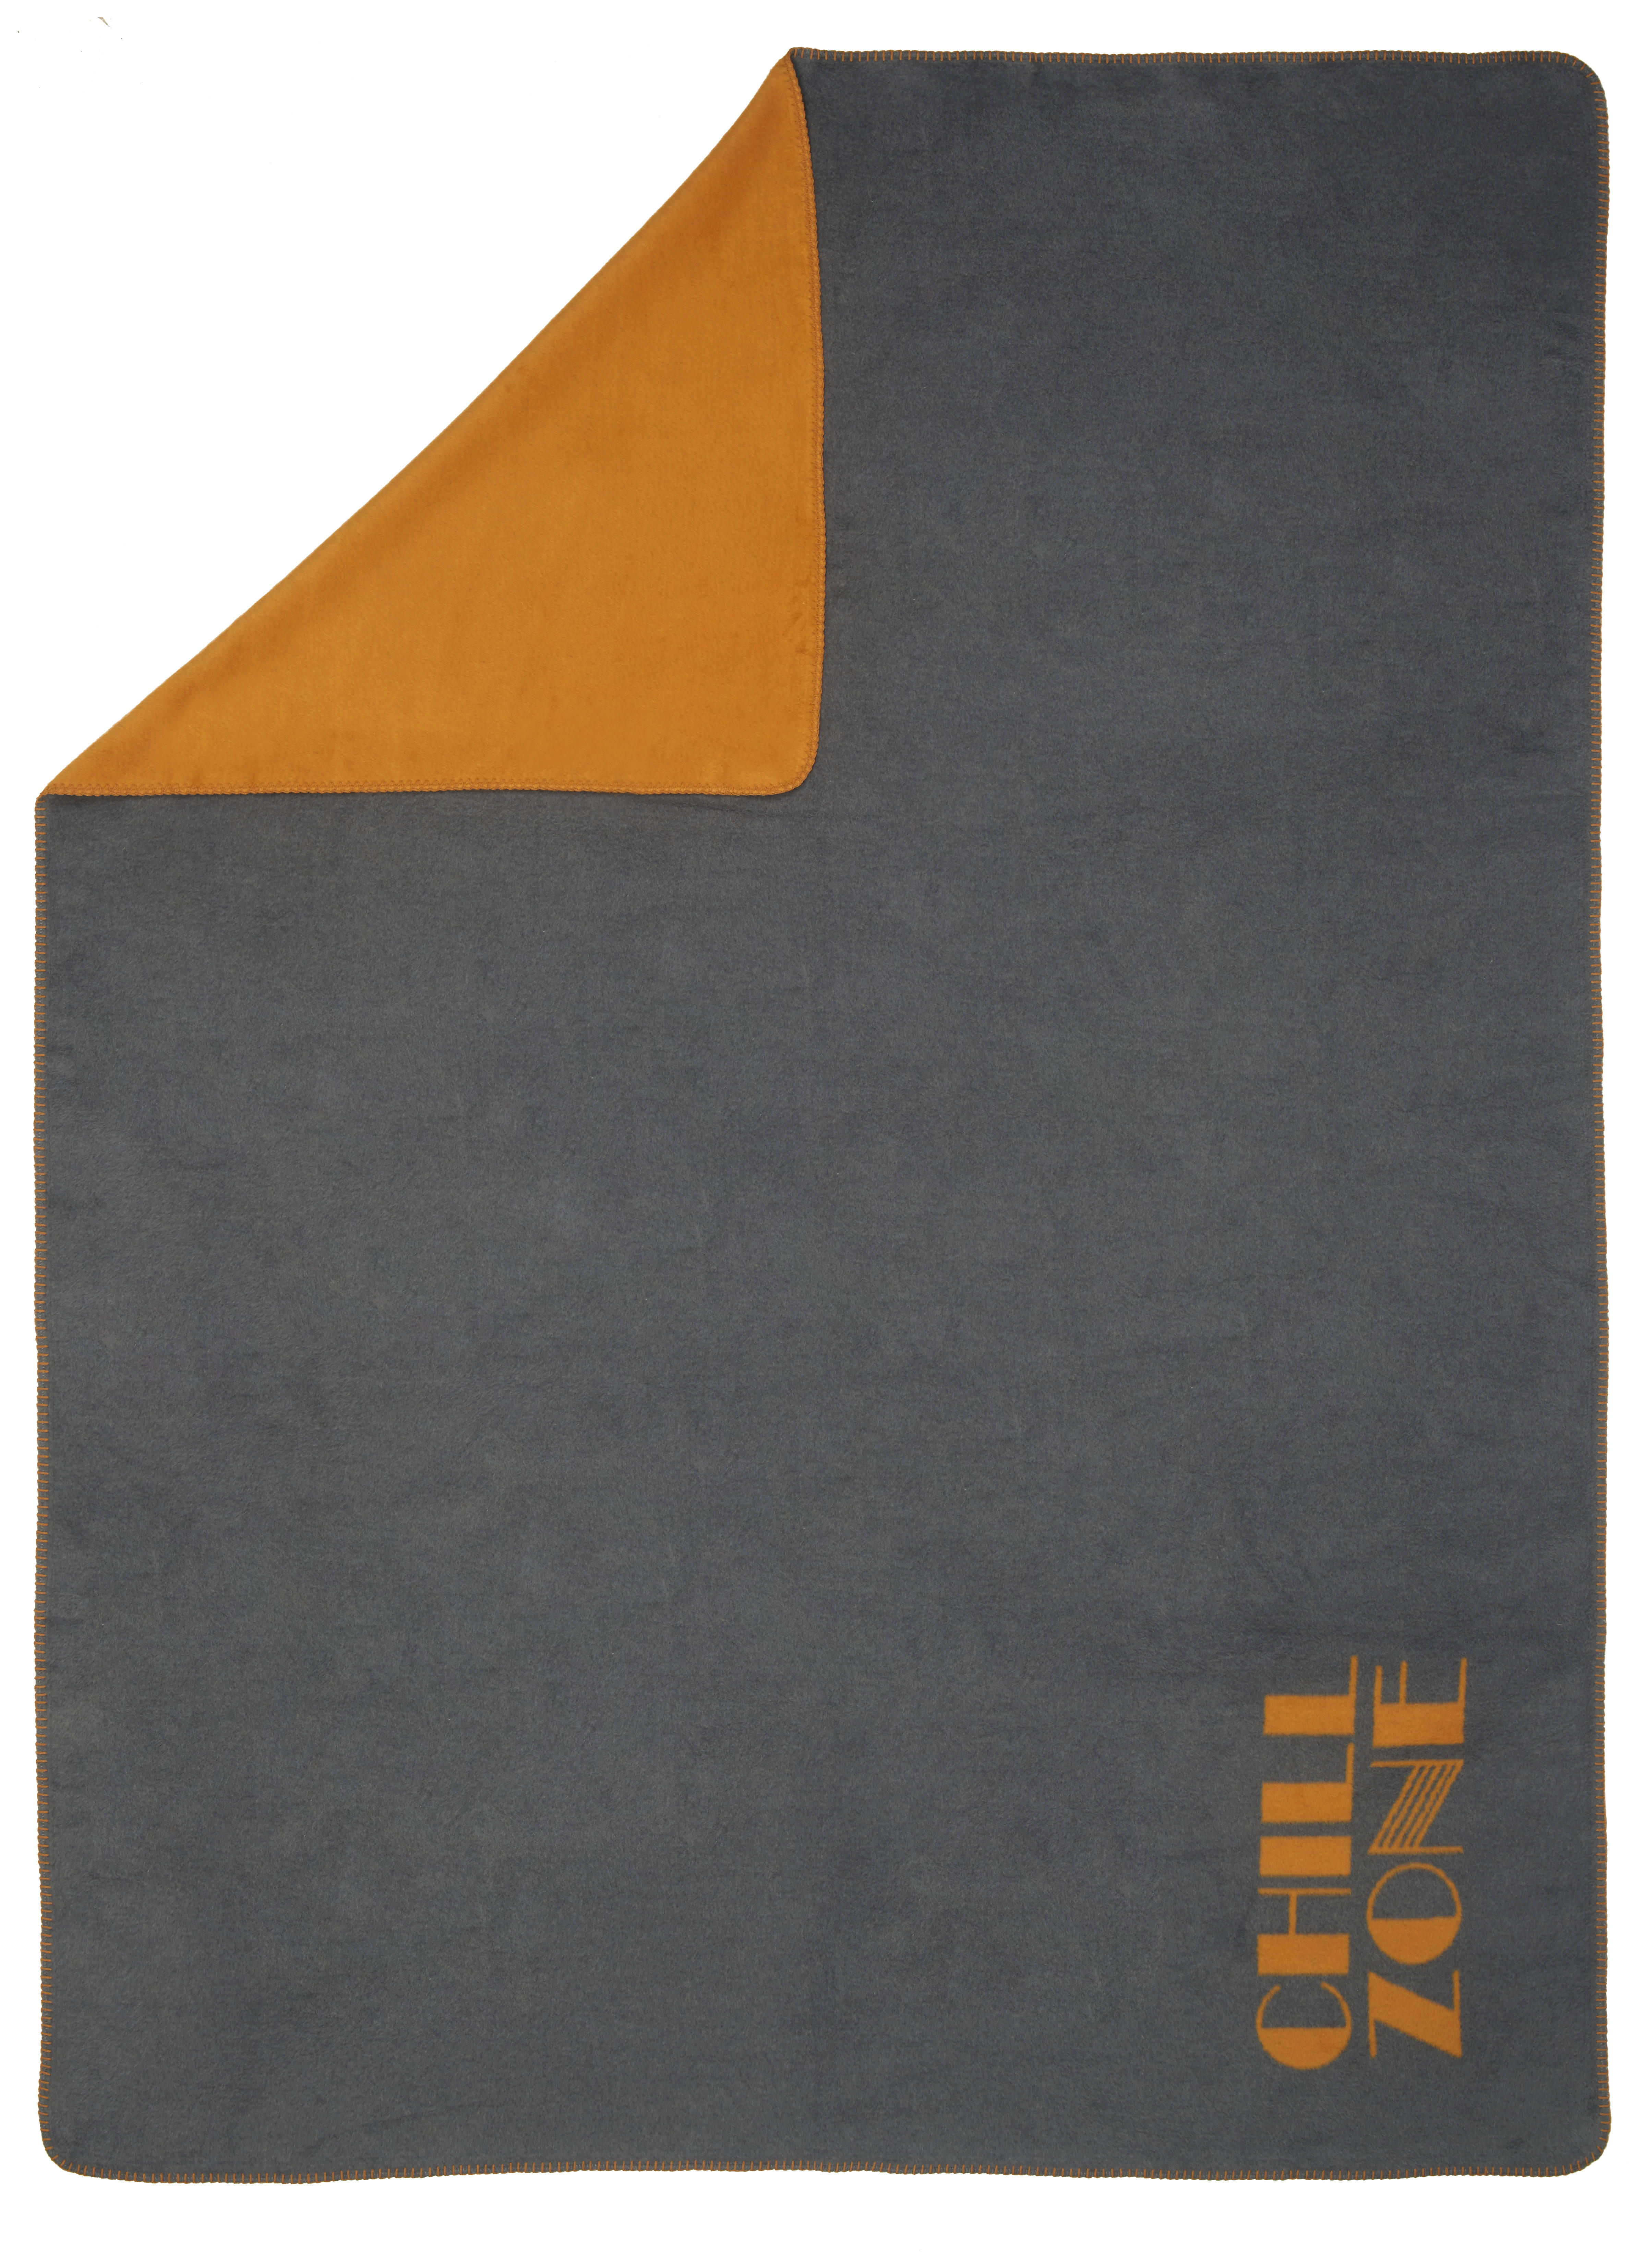 David Fussenegger MĚKKÁ DEKA, bavlna, 150/200 cm - antracitová, oranžová